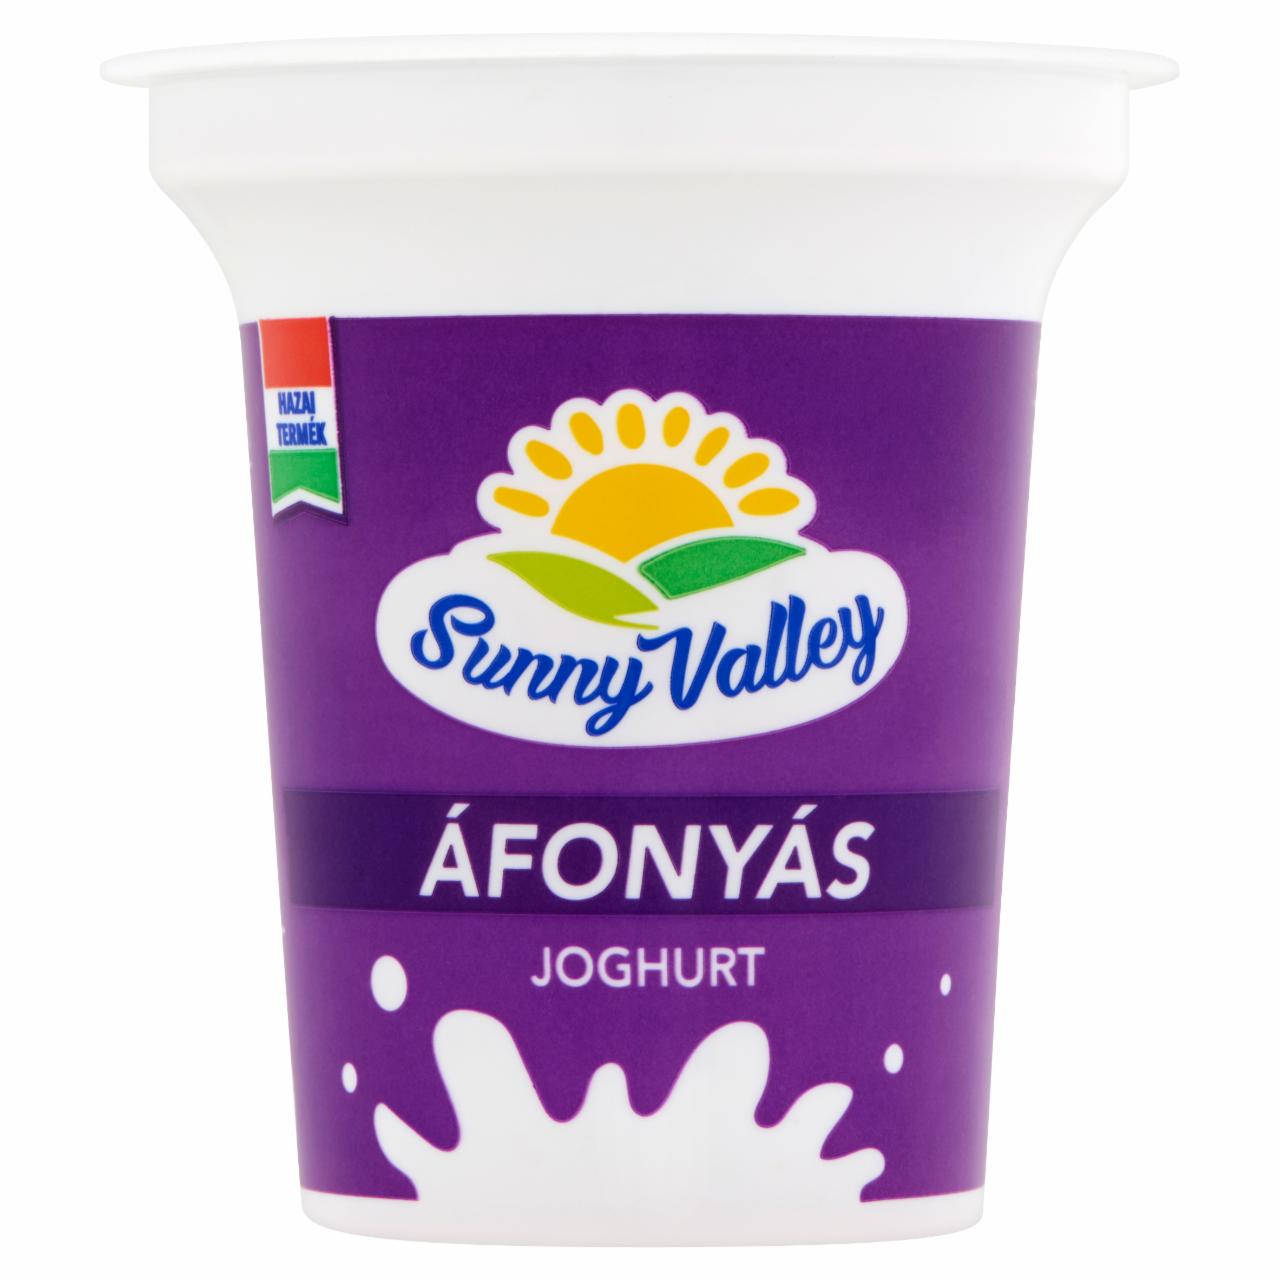 Képek - Sunny Valley élőflórás, zsírszegény áfonyás joghurt 140 g